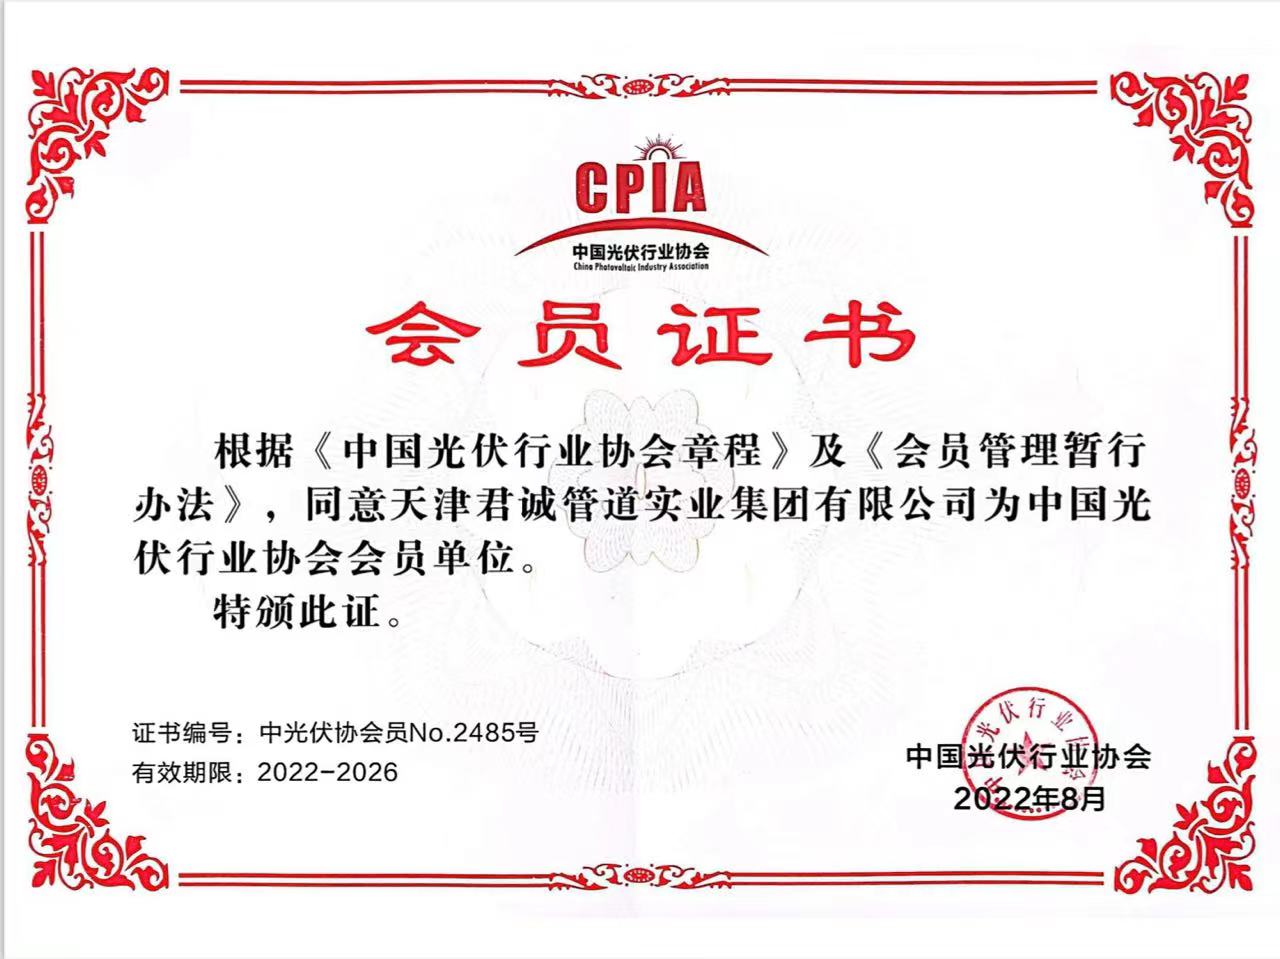 中国光伏行业协会 会员单位